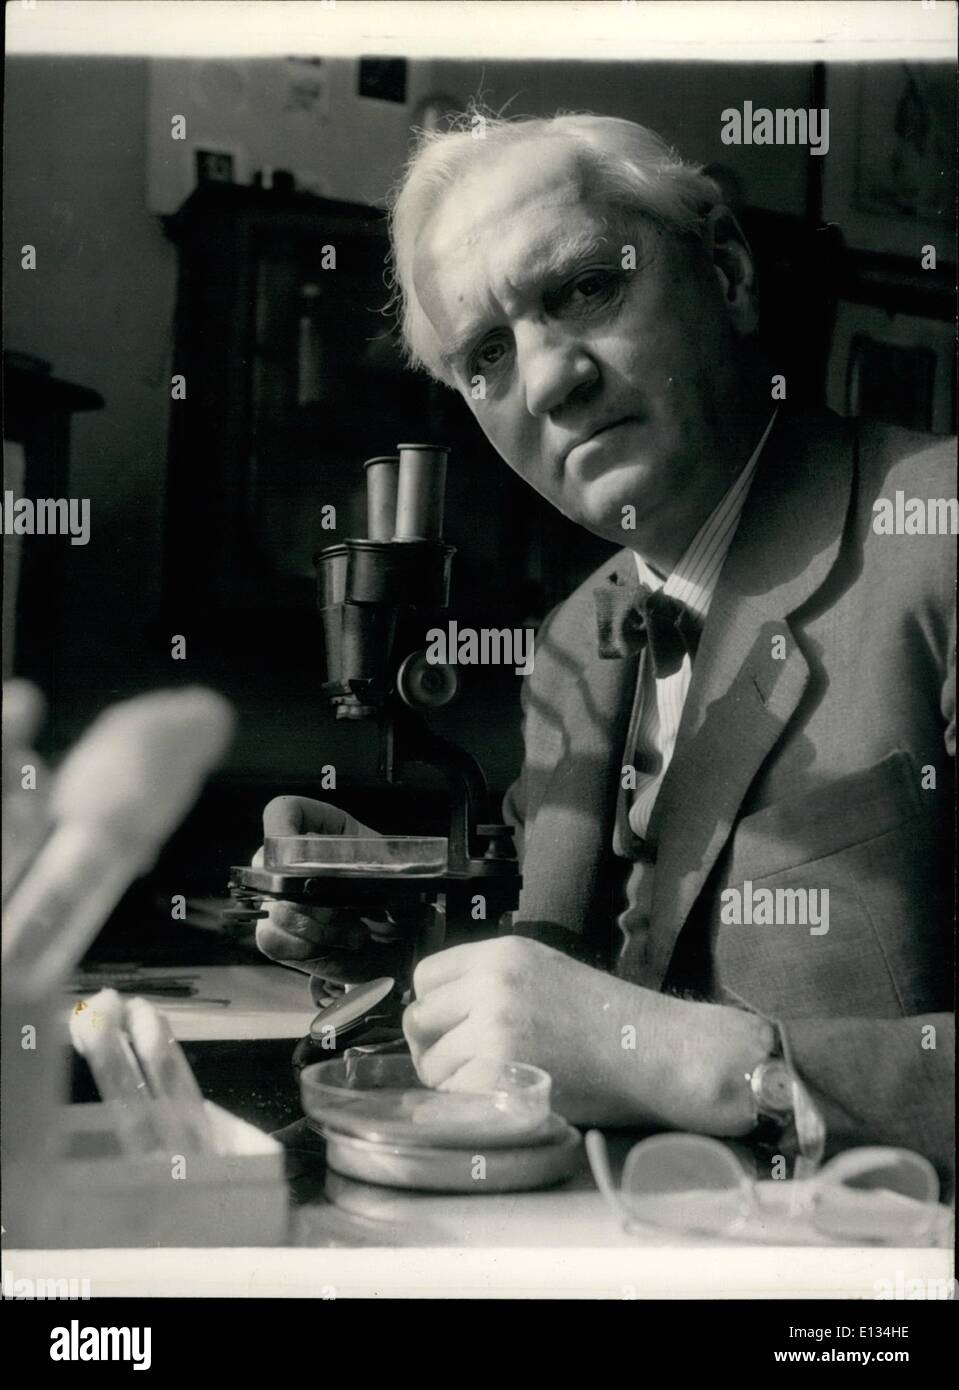 28 févr. 2012 - Sir Alexander Fleming : l'homme qui a découvert la pénicilline, il y a 25 ans : La célèbre bactériologiste, directeur de l'Wright -Fleming, l'Institut travaille avec son microscope dans son laboratoire à St. ,Mary's Hospital, Londres. Banque D'Images